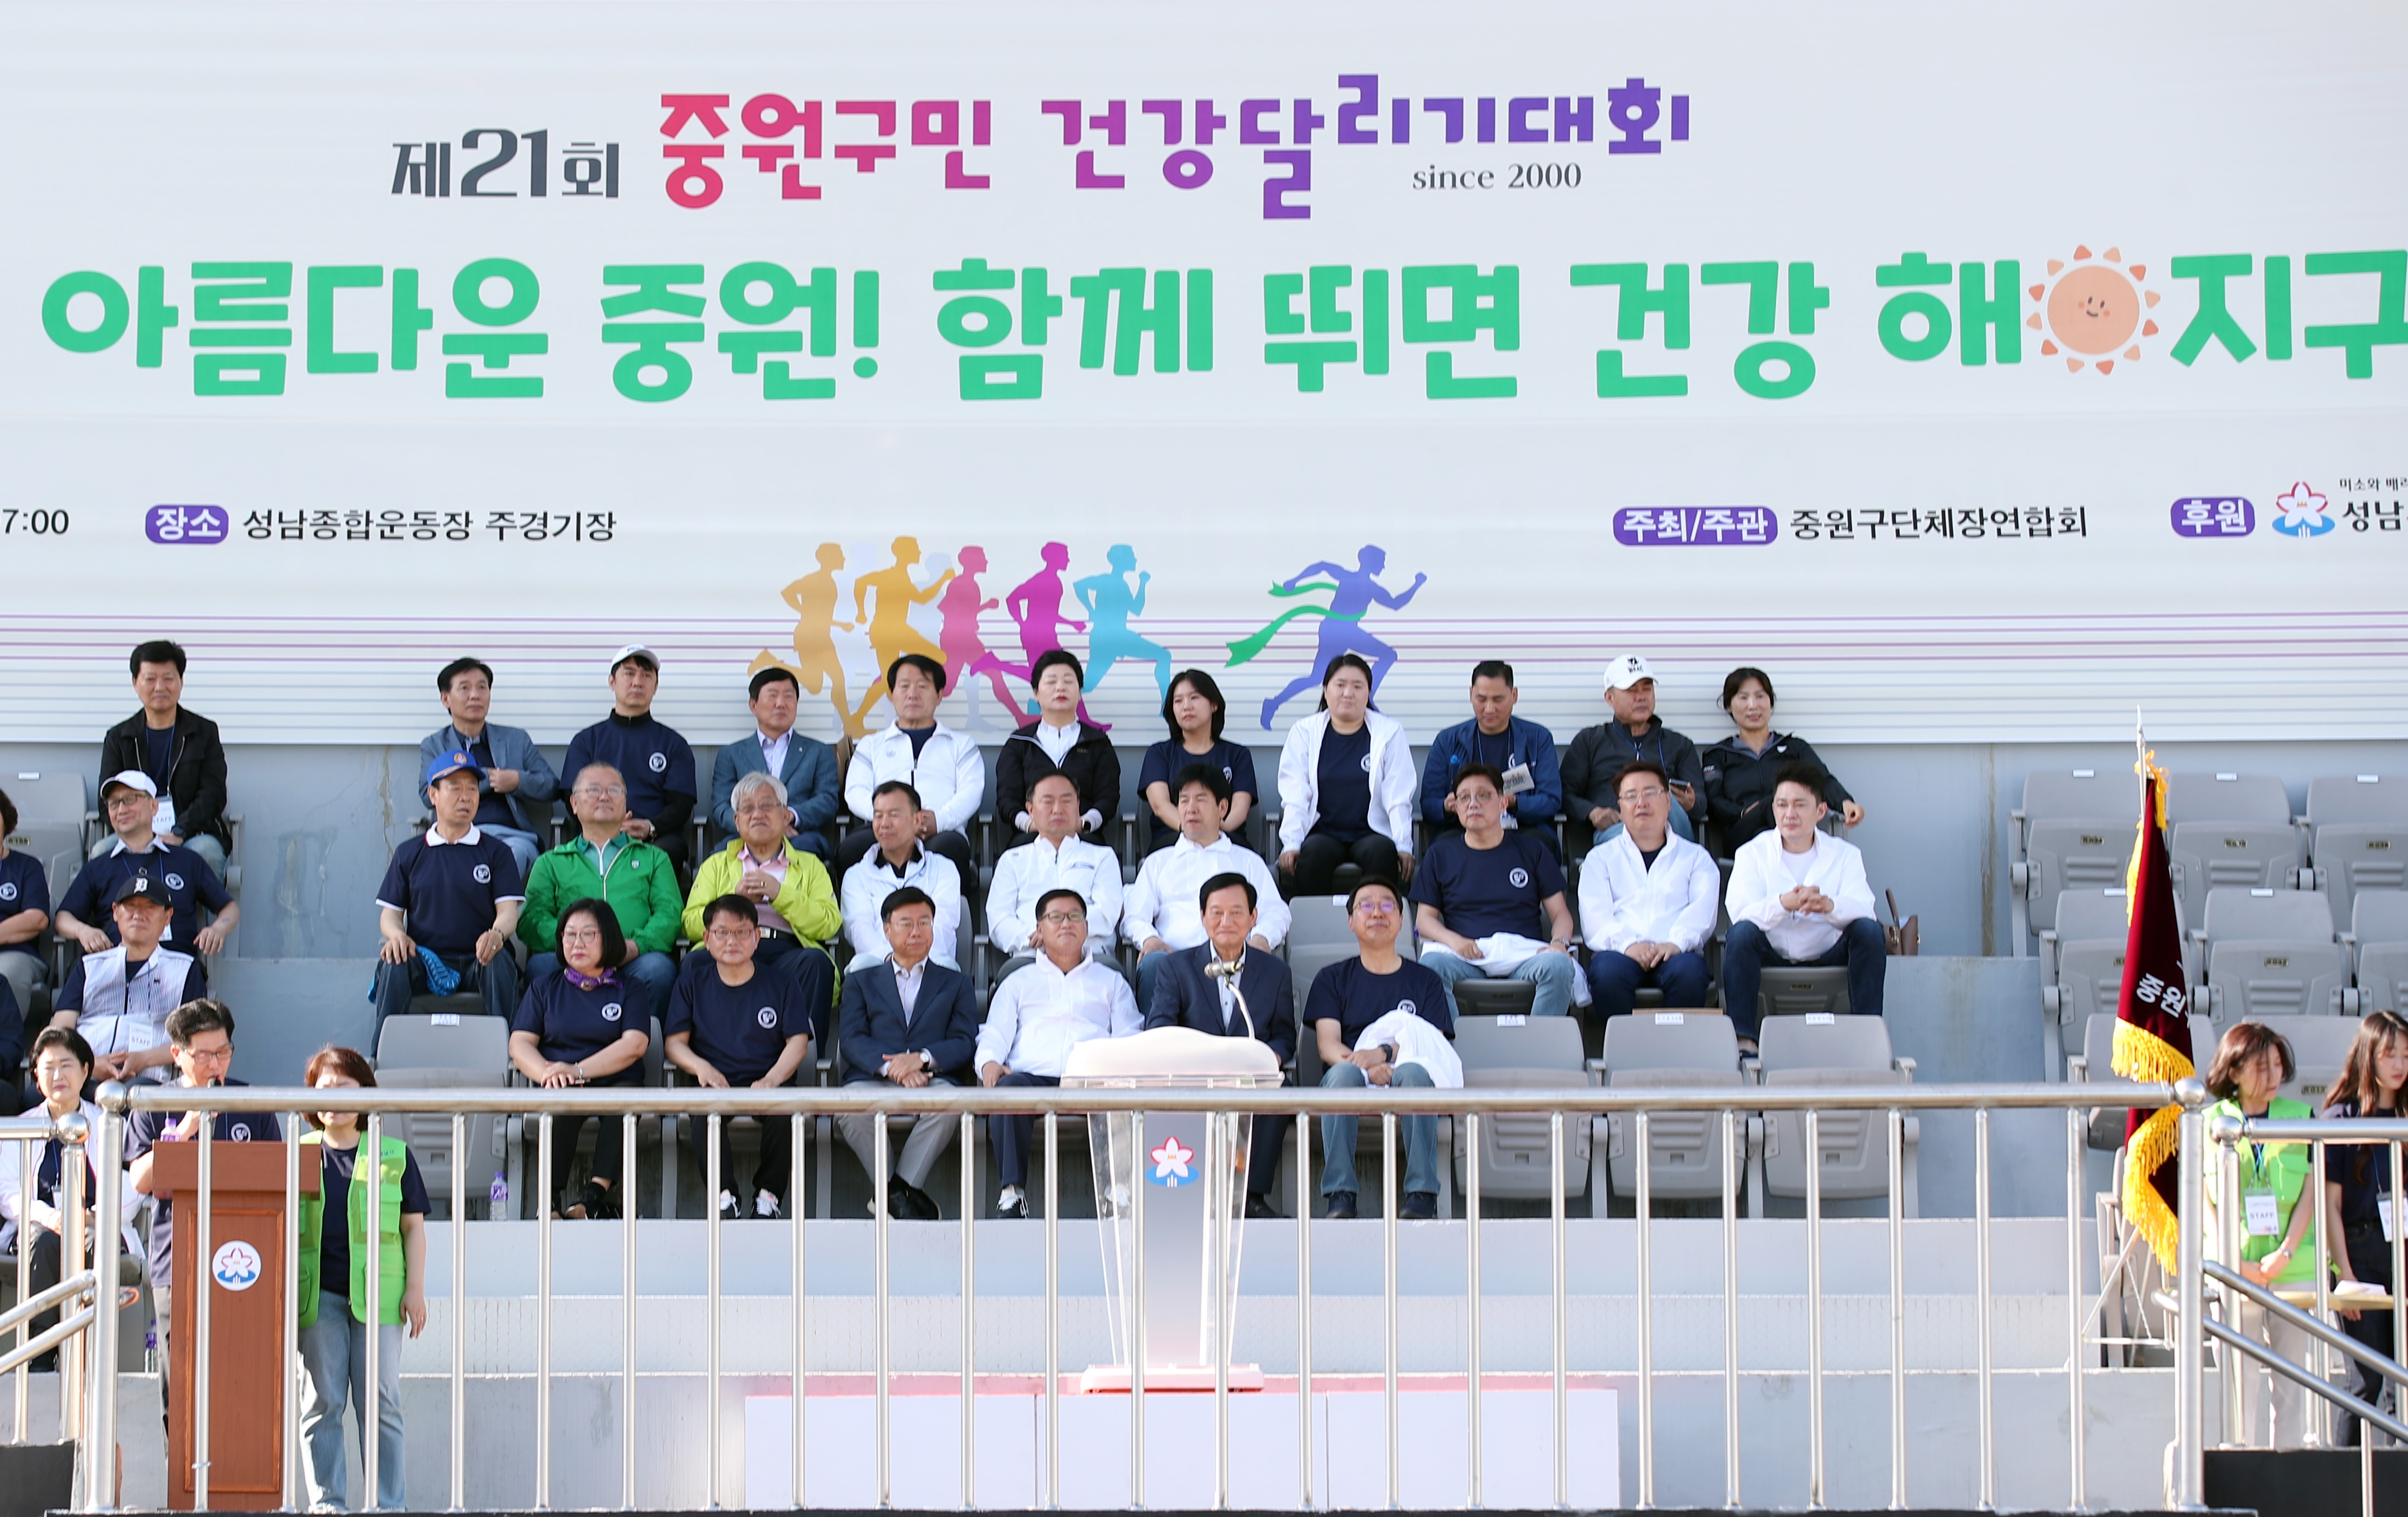  제21회 중원구민 건강달리기대회  - 3